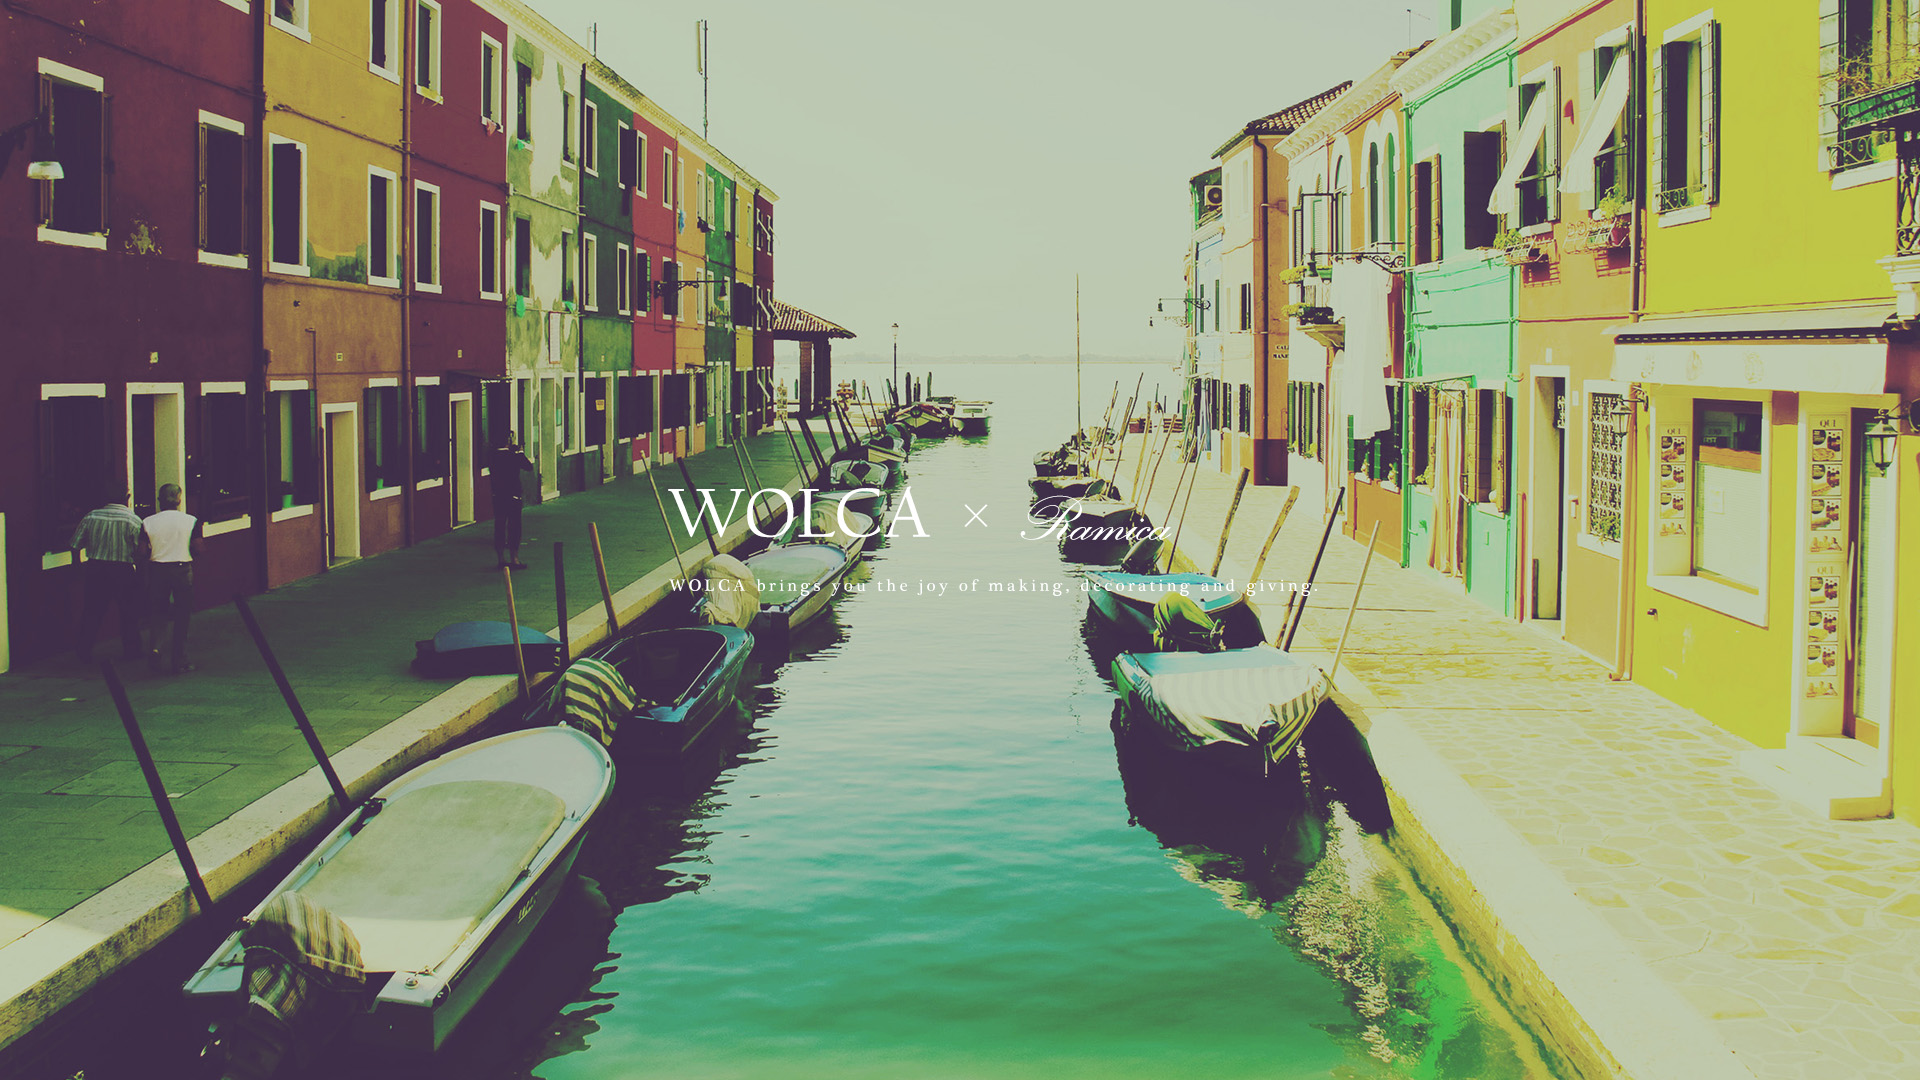 デスクトップpc用壁紙 ベネティアのおしゃれな街並み写真 Wolca